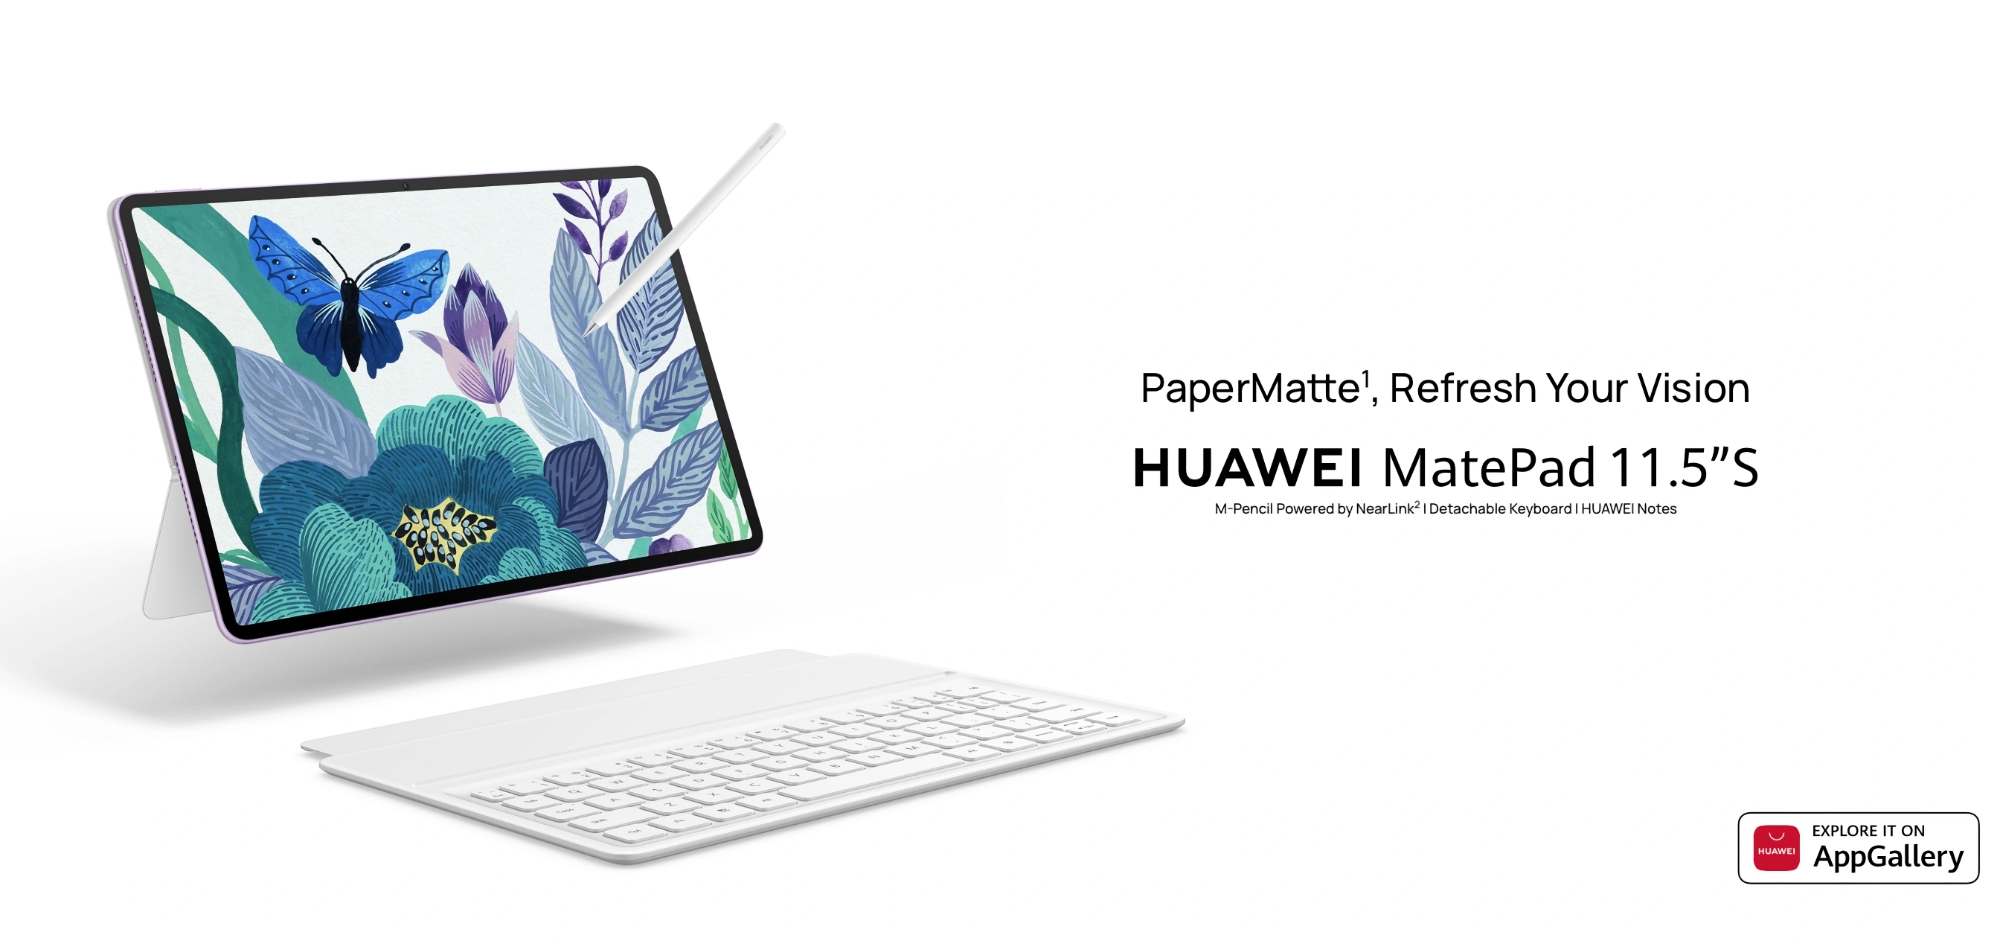 Huawei MatePad 11.5 S: дисплей на 144 Гц с технологией PaperMatte, батарея на 8800 мАч и цена 399